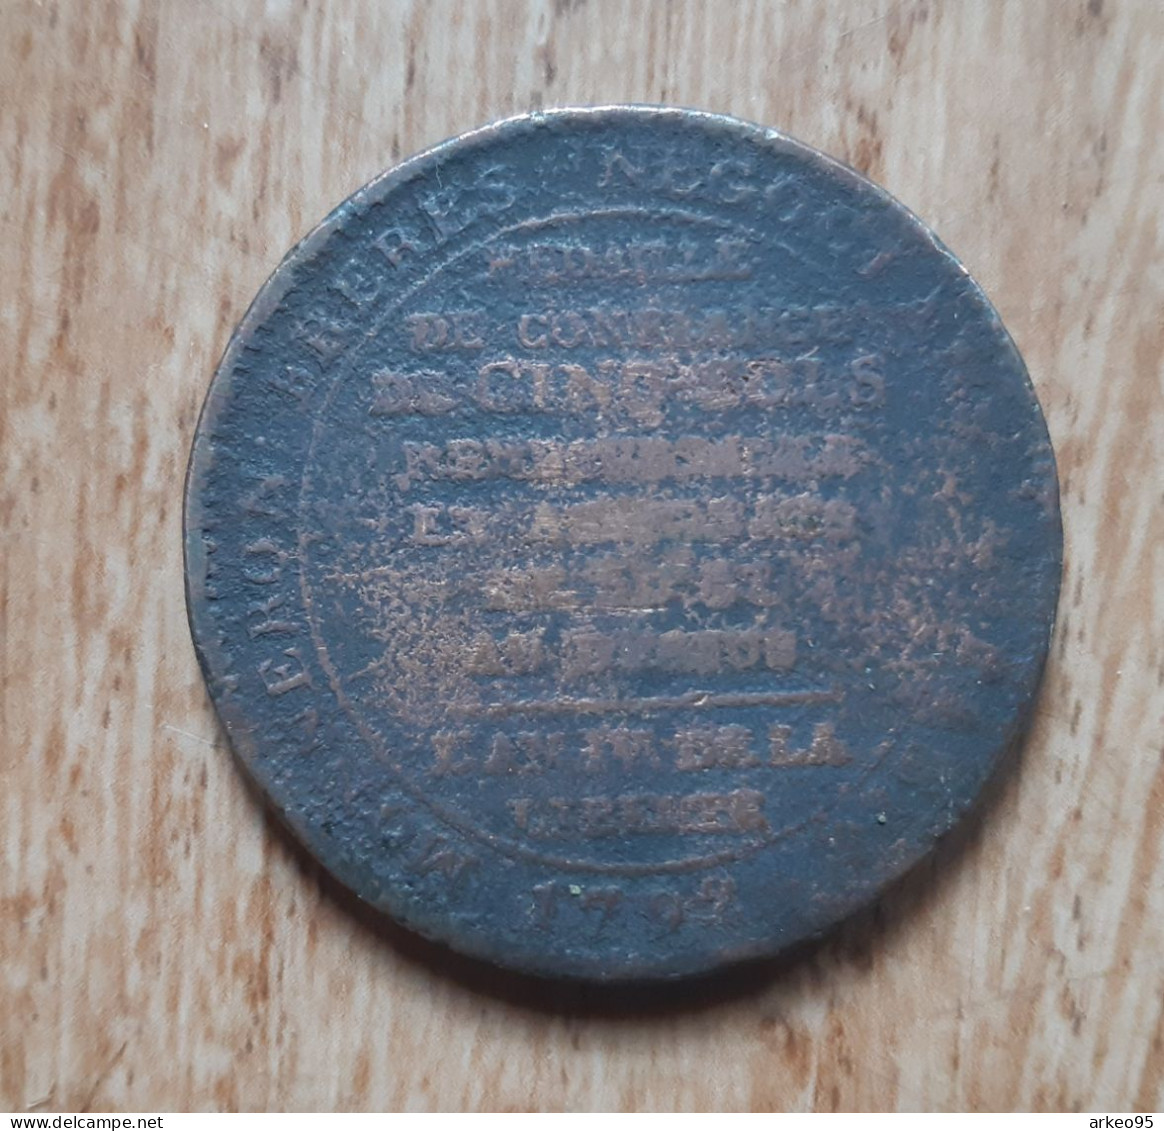 Monnaie De Confiance 5 Sols Monneron 1792 - 1791-1792 Verfassung 